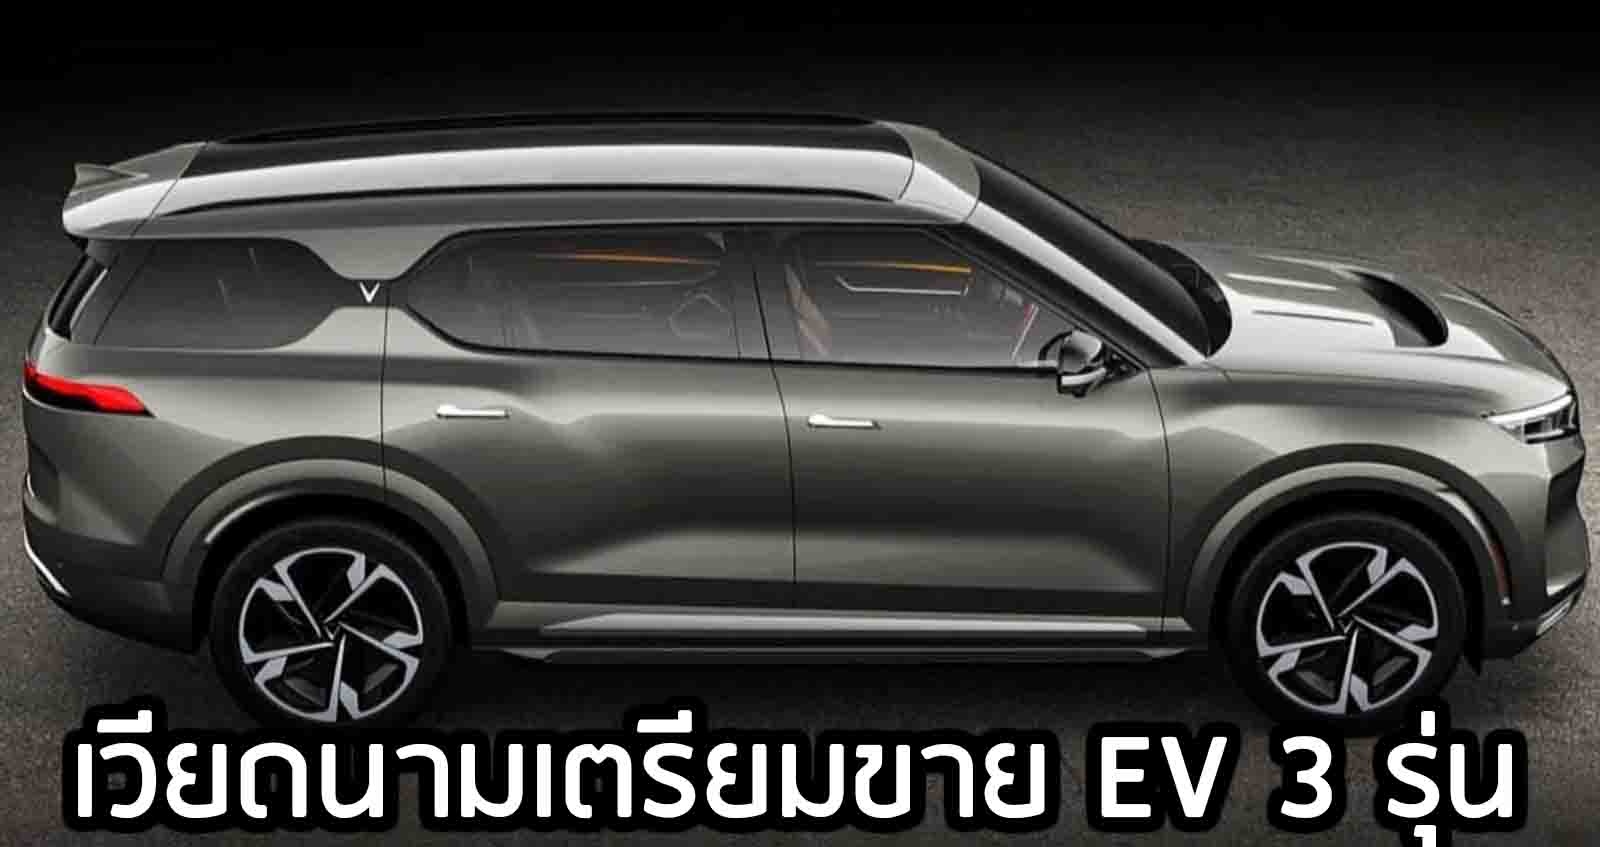 VinFast รถเวียดนาม เตรียมเปิดตัว EV 3 รุ่น พร้อมระบบขับขี่อัตโนมัติ